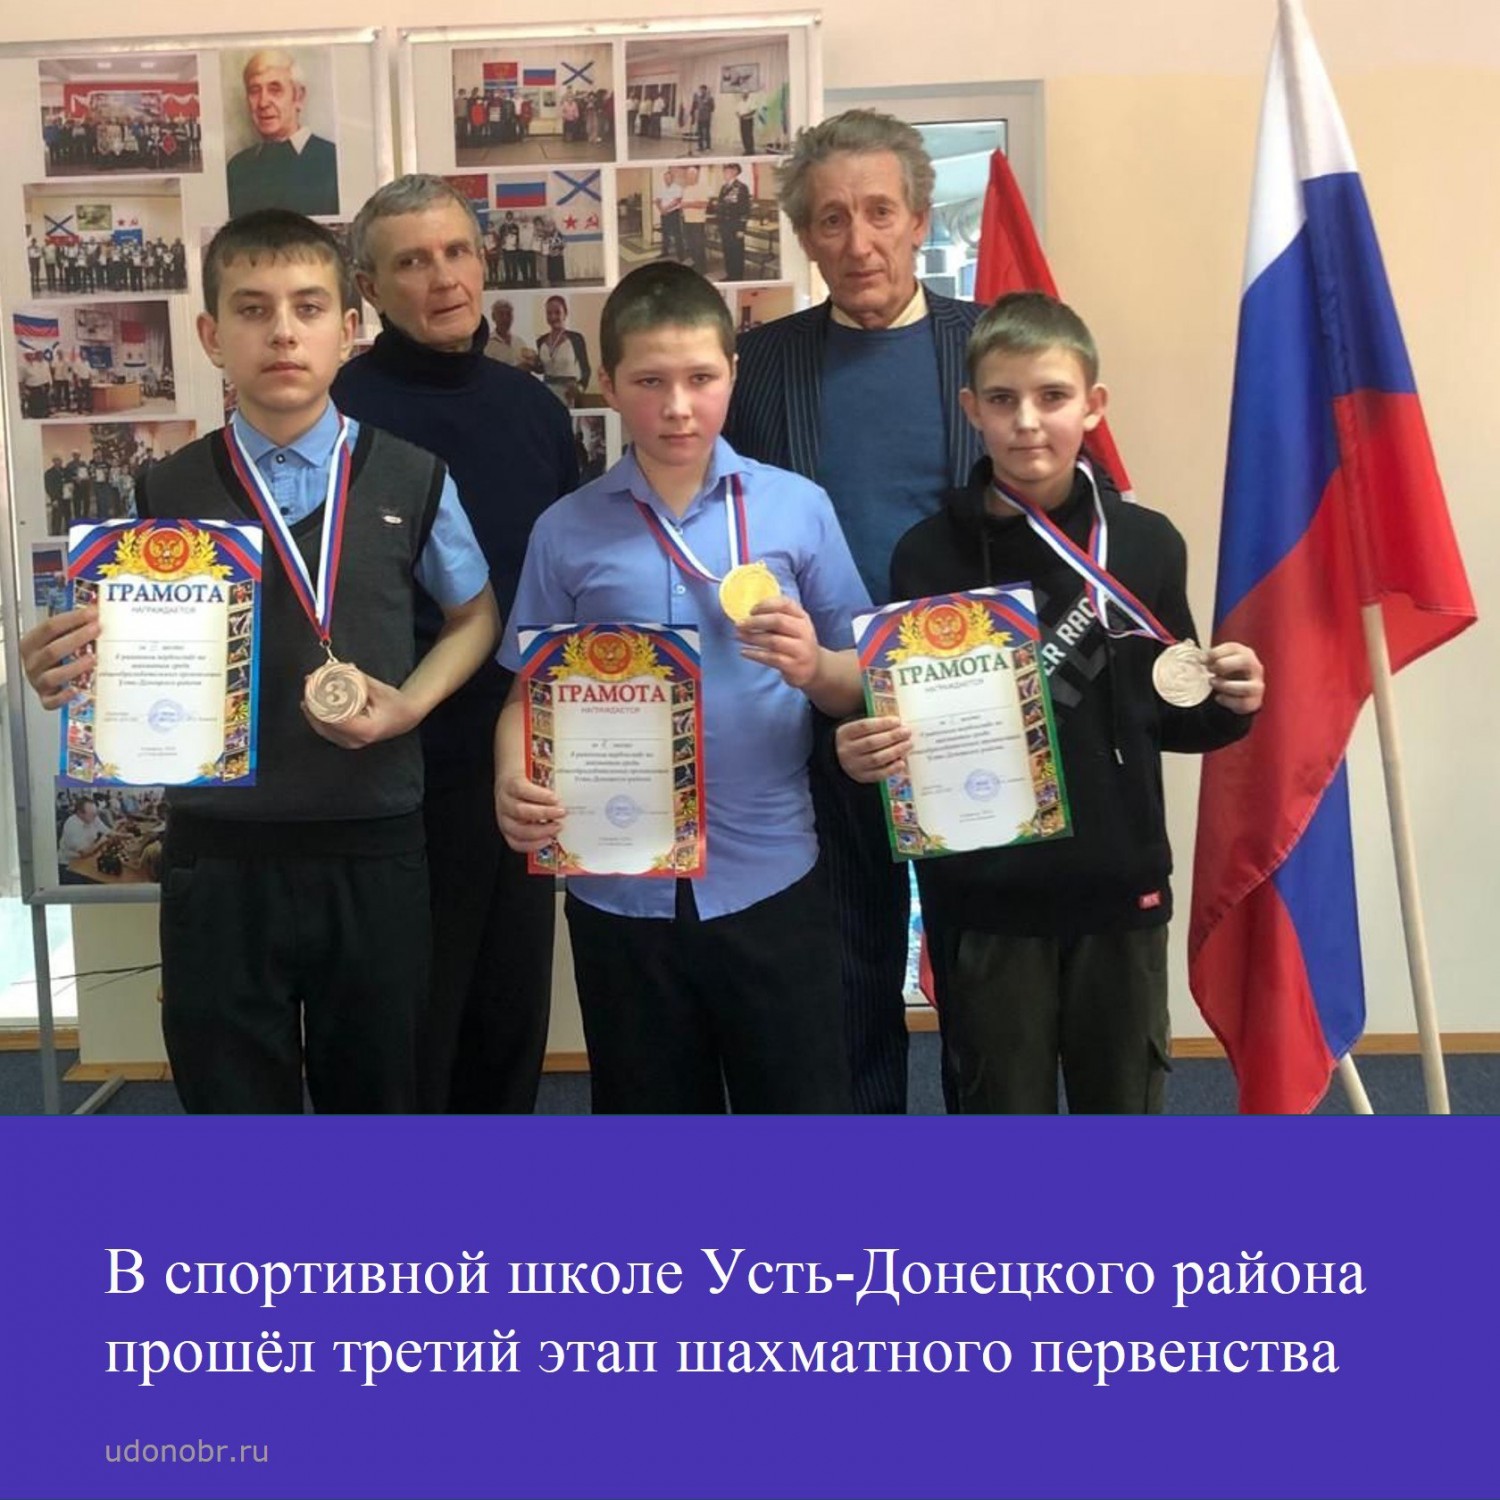 В спортивной школе Усть-Донецкой района прошёл третий этап шахматного первенства